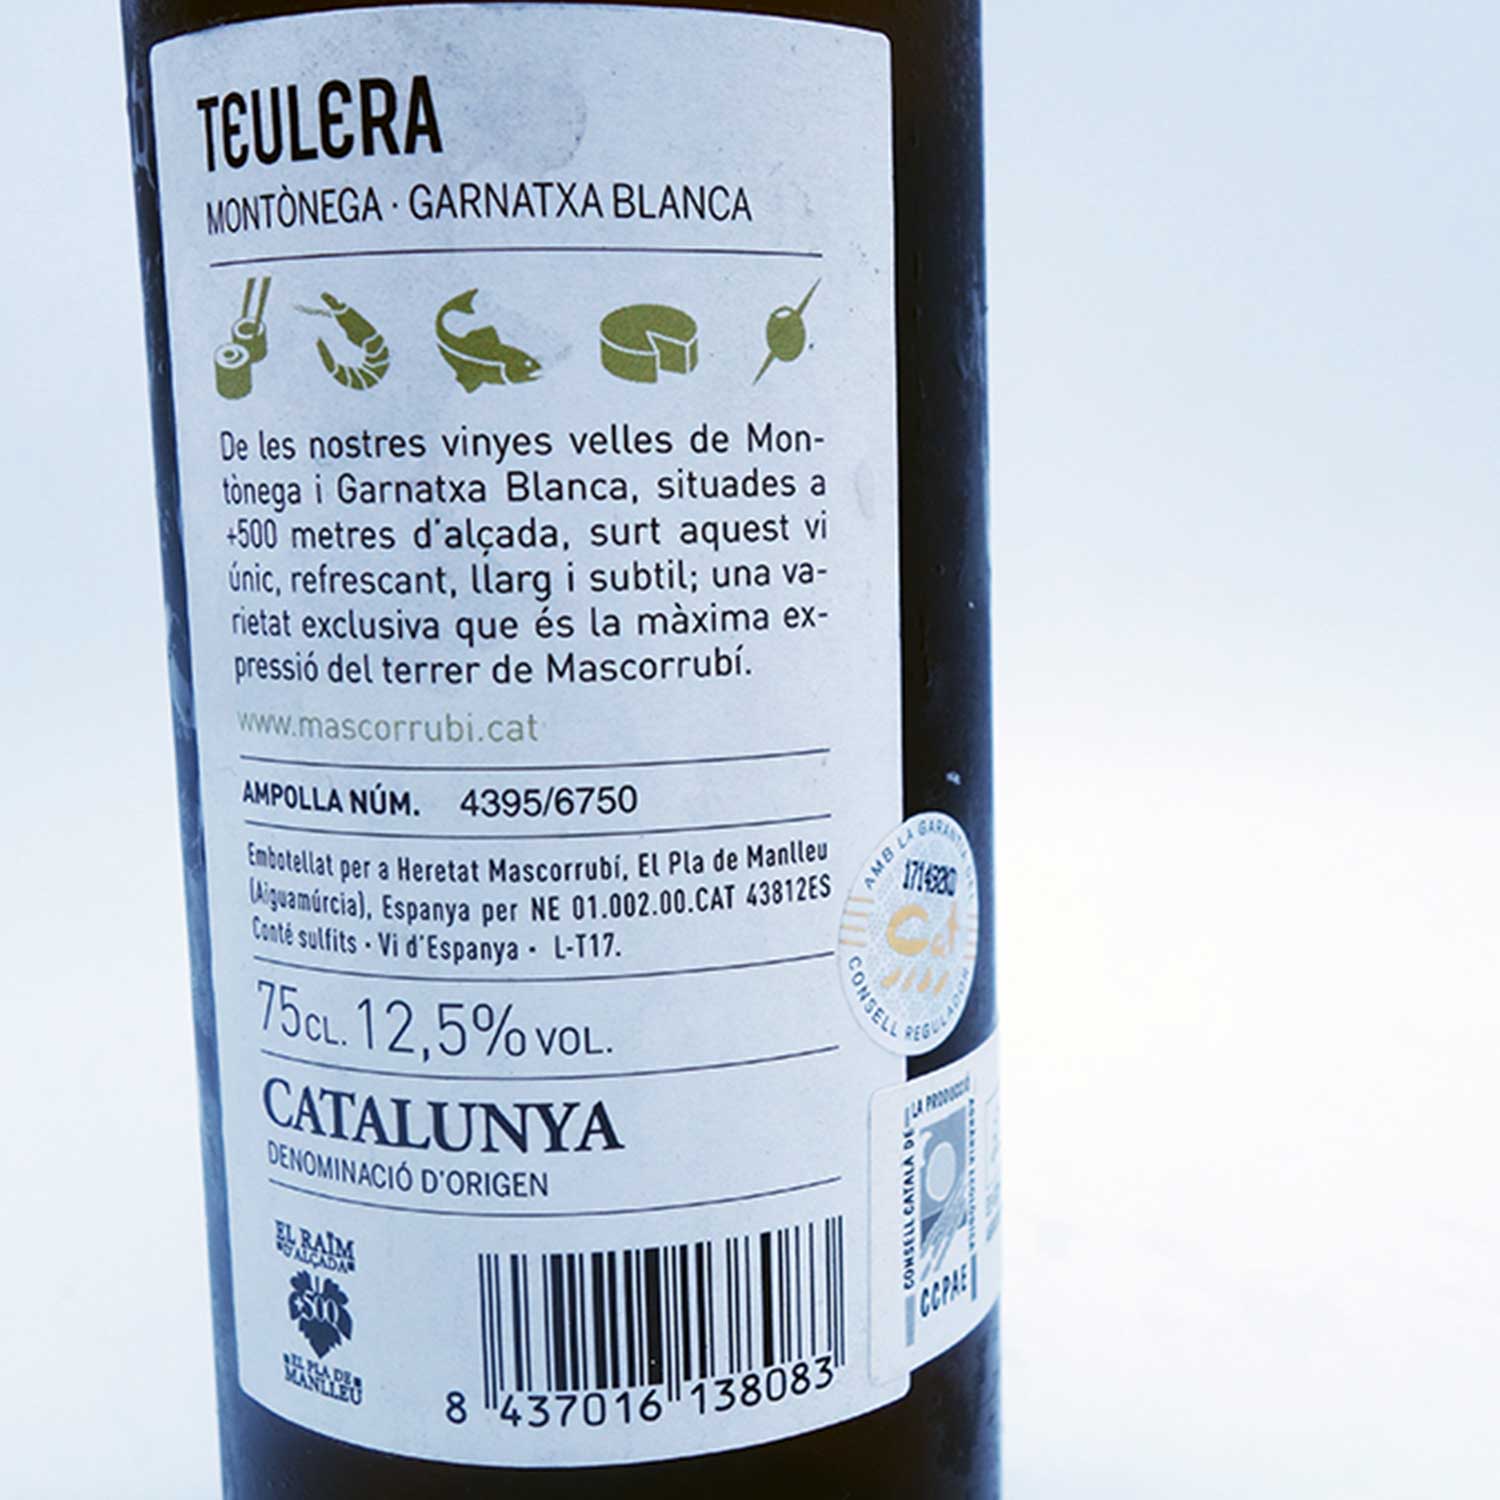 Teulera-Heretat-Mascorrubi-Catalunya-3